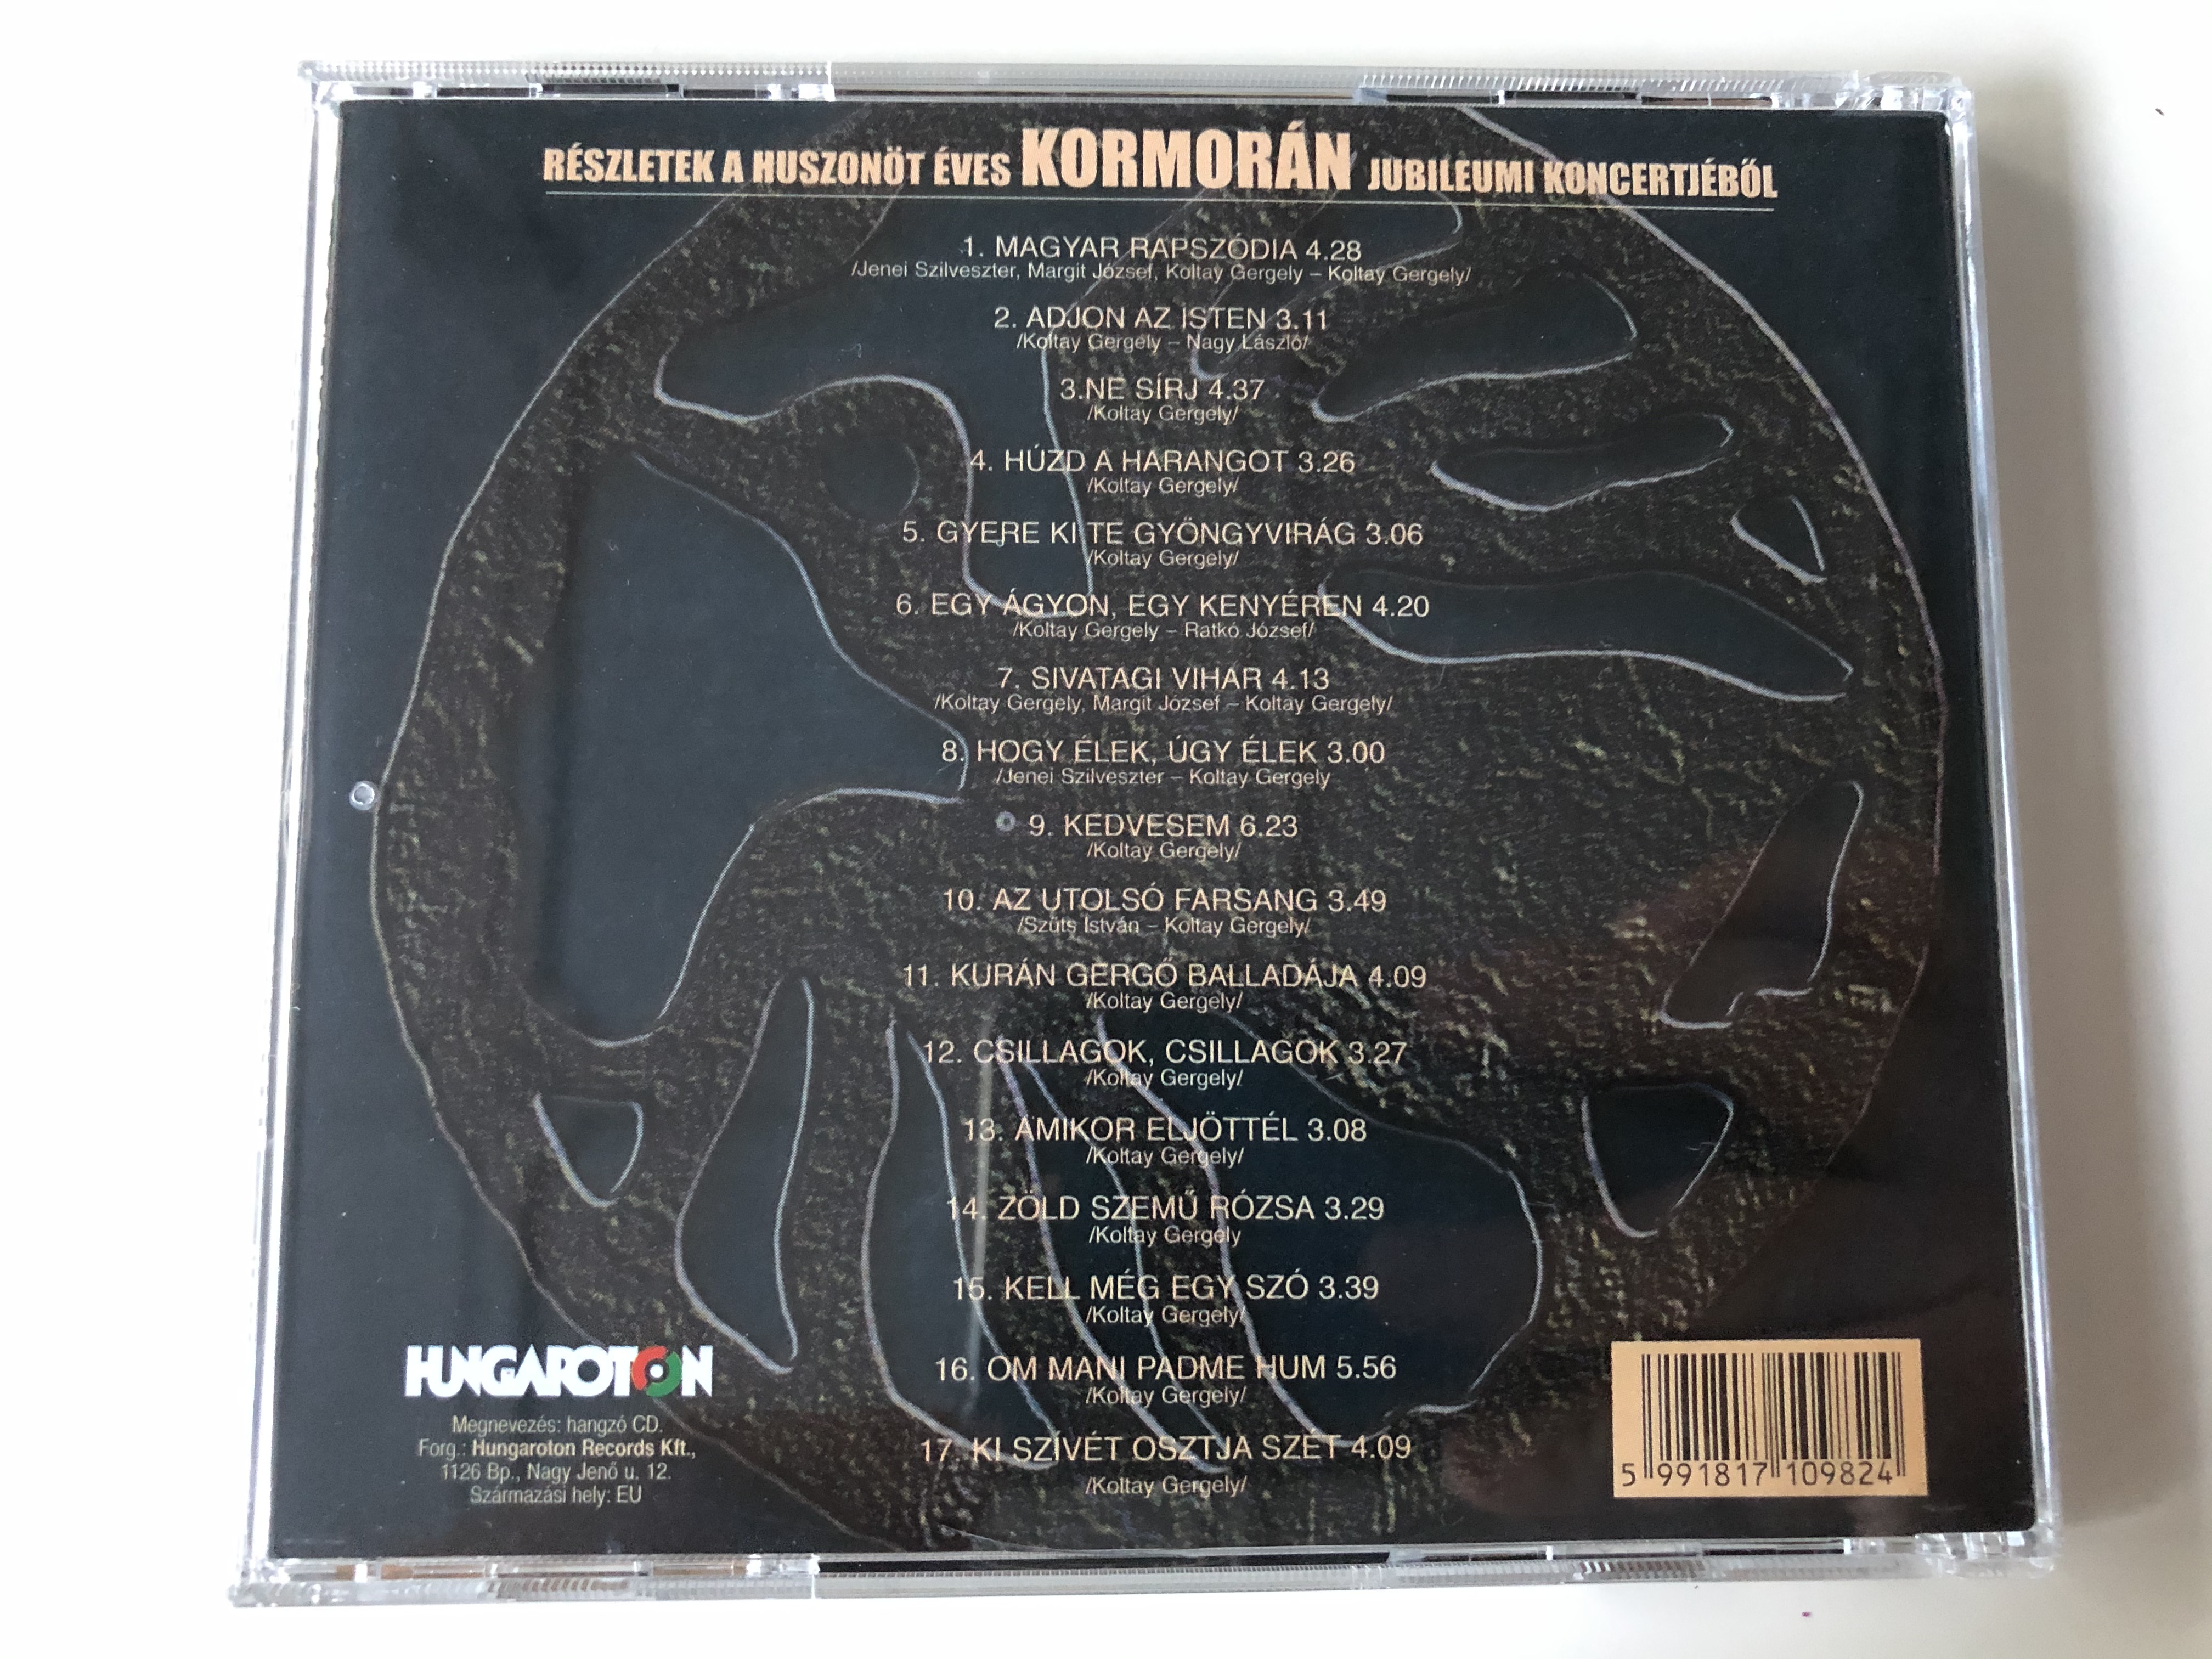 kormor-n-g-d-ll-i-koncert-2001.-november-10.-szent-istvan-egyetem-hungaroton-audio-cd-2001-hcd-71098-5-.jpg